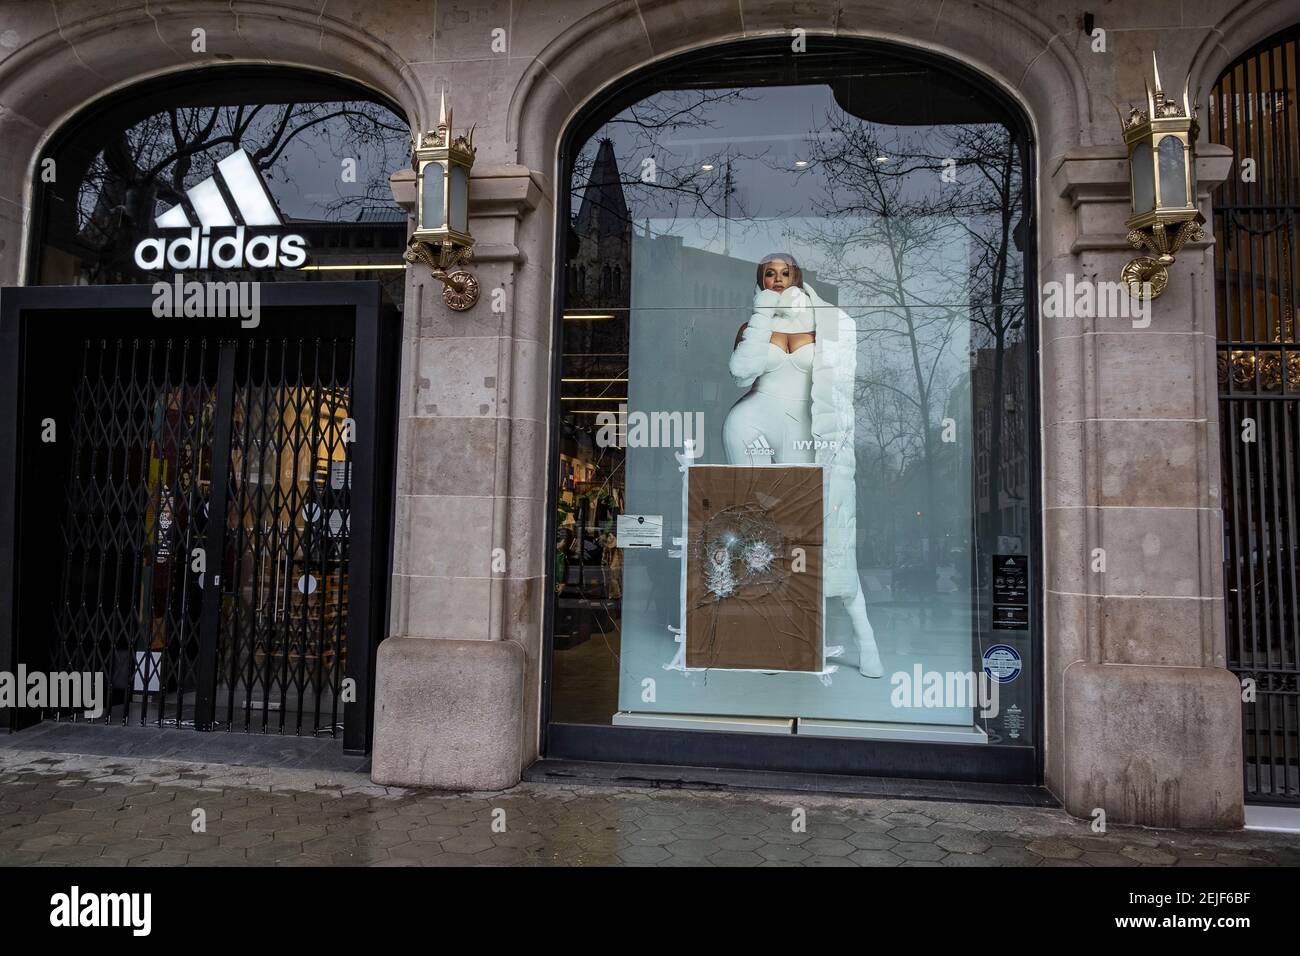 Barcelona, España. 22 de febrero de 2021. La tienda Adidas en el de Gràcia se ve con un daño su ventana.más de 50 tiendas han sufrido daños sus escaparates